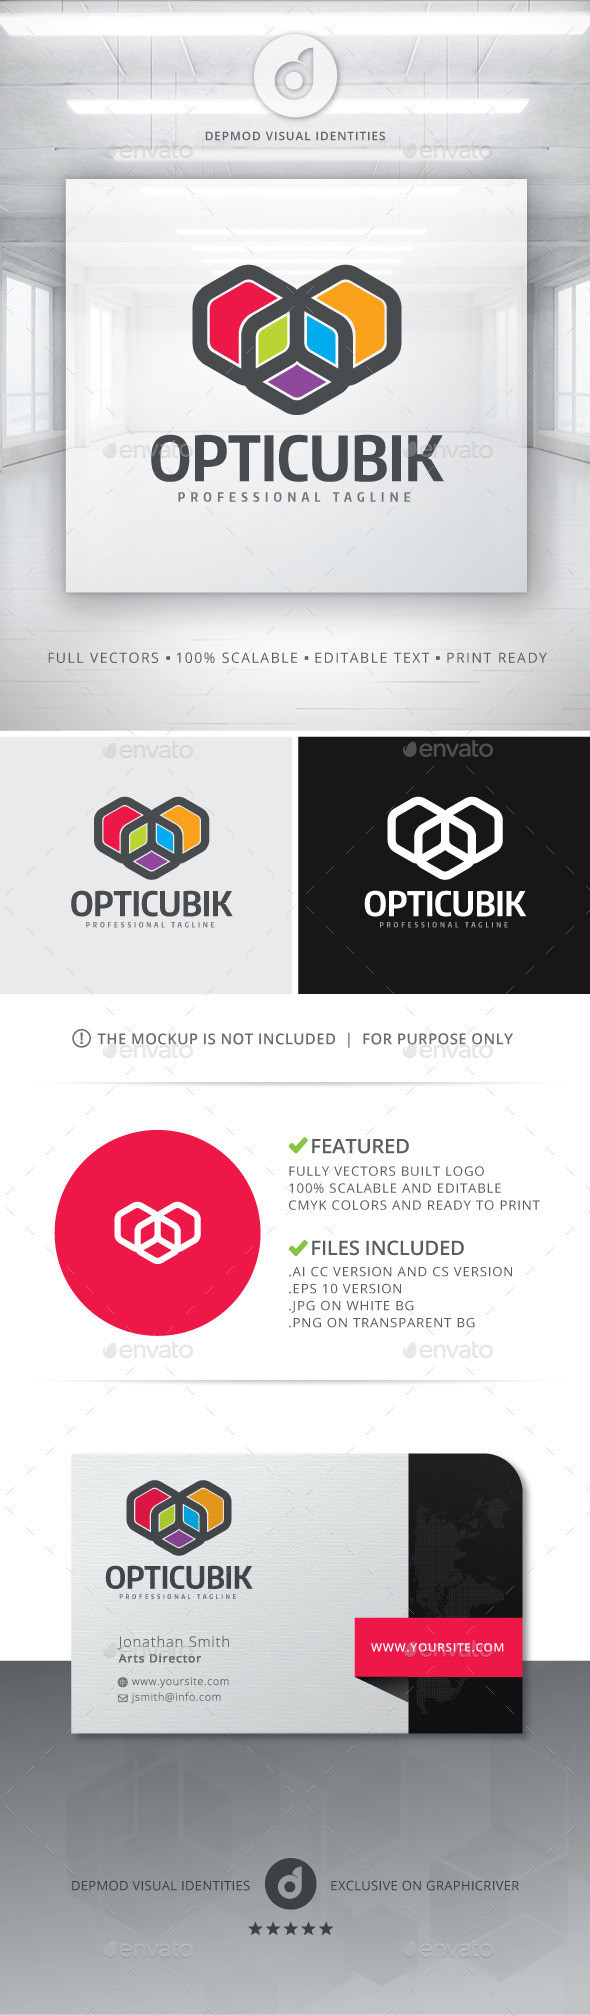 Opticubik logo